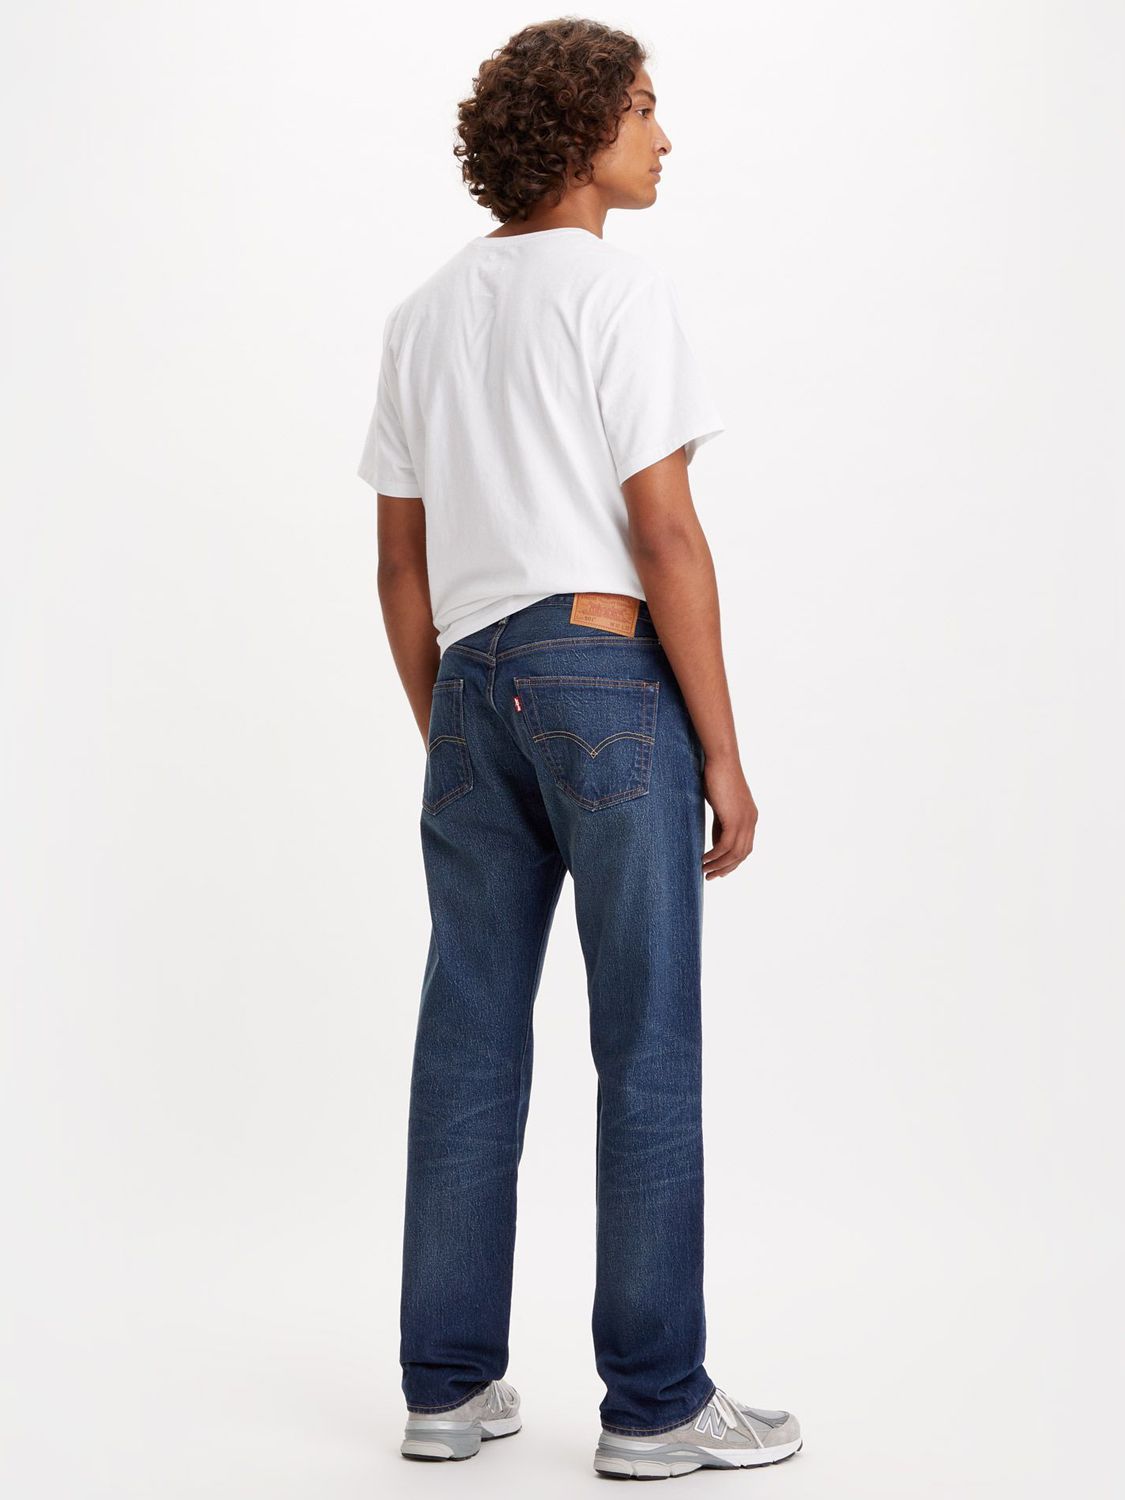 Levi's 501 Original Straight Jeans, Vintage Authentic